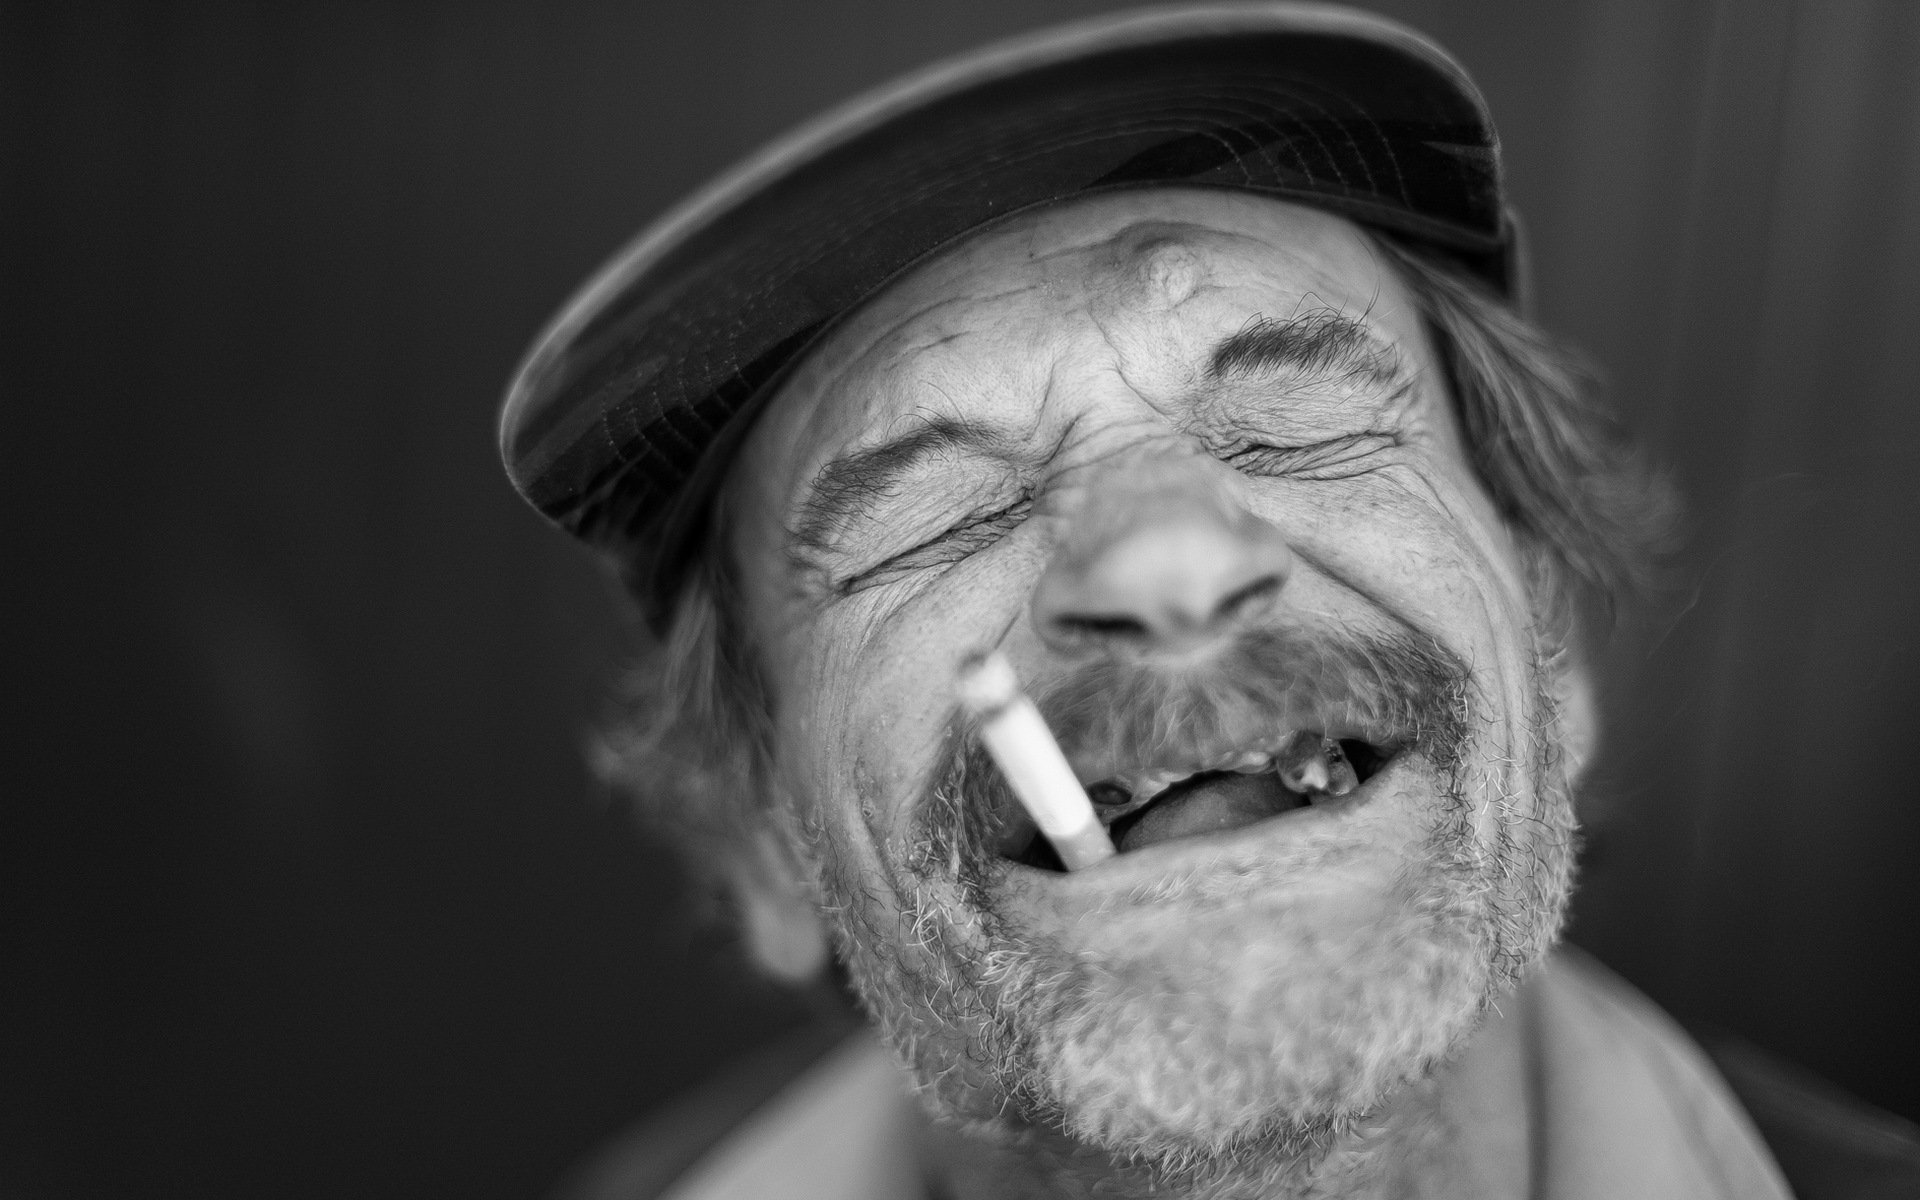 Клевый мужик. Дед с сигаретой. Прикольные фото на аватарку для мужчин. Беззубая улыбка старика. Мужик в кепке с папиросой.